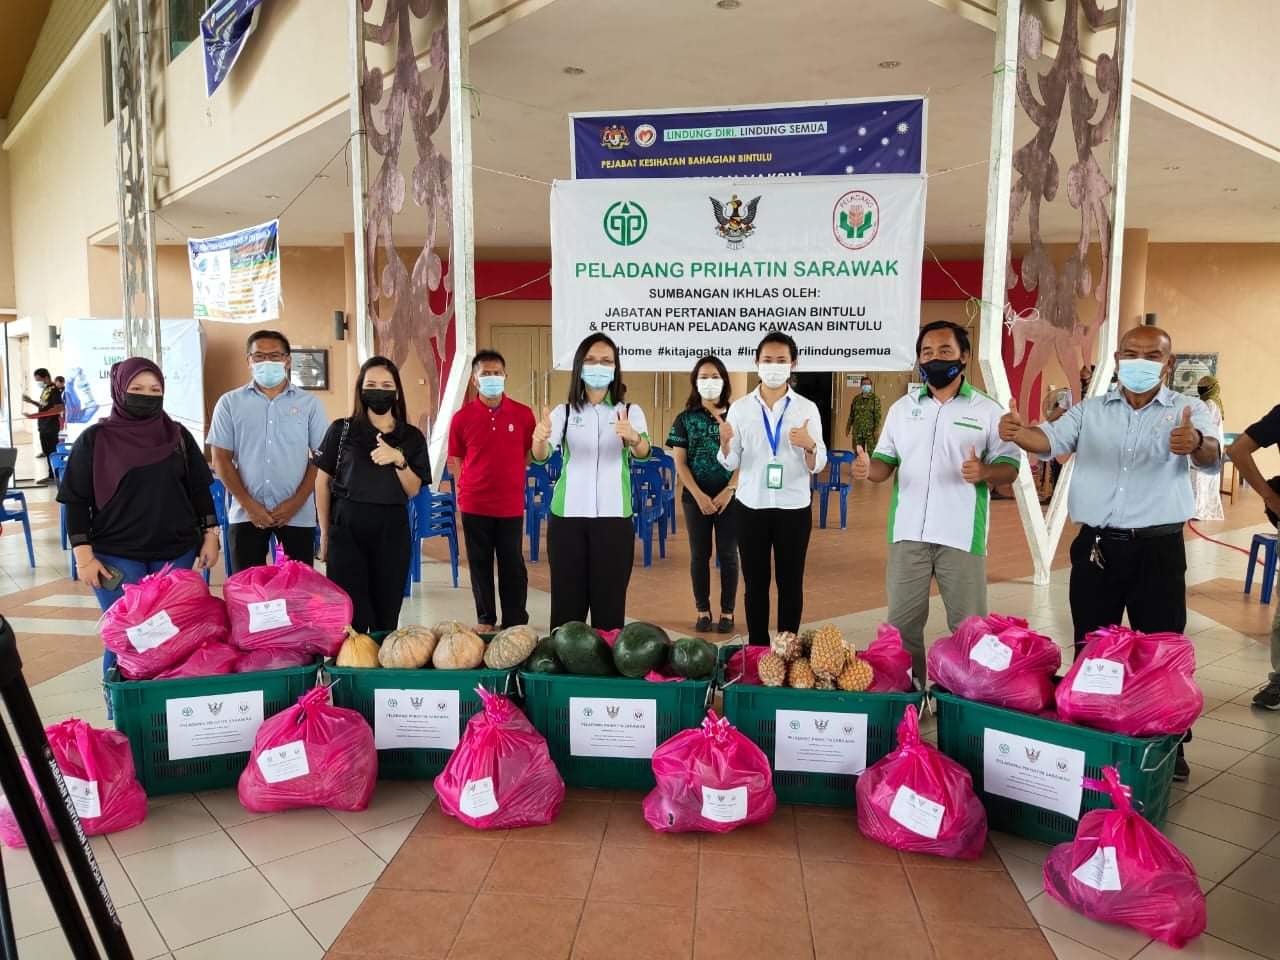 Program Peladang Prihatin Sarawak anjuran Jabatan Pertanian Bahagian Bintulu bersama PPK Bintulu